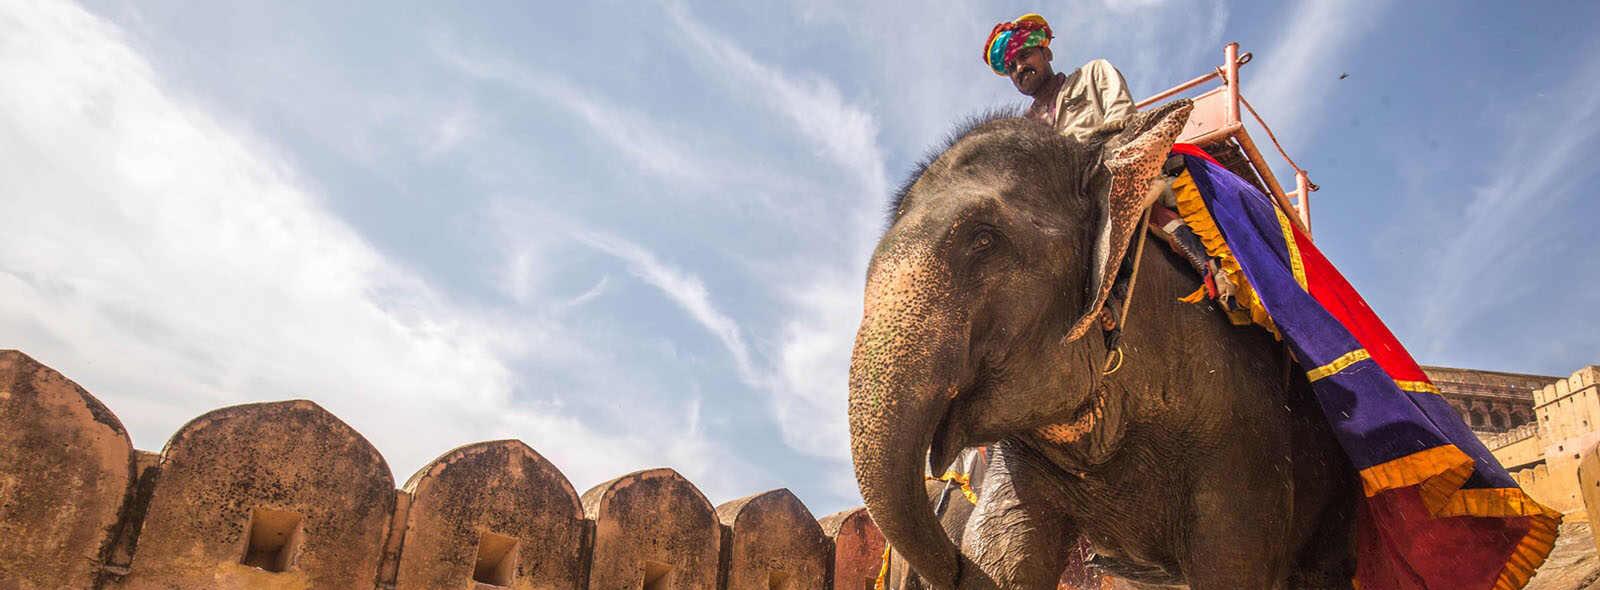 aziatische olifant met man op de rug jaisalmer